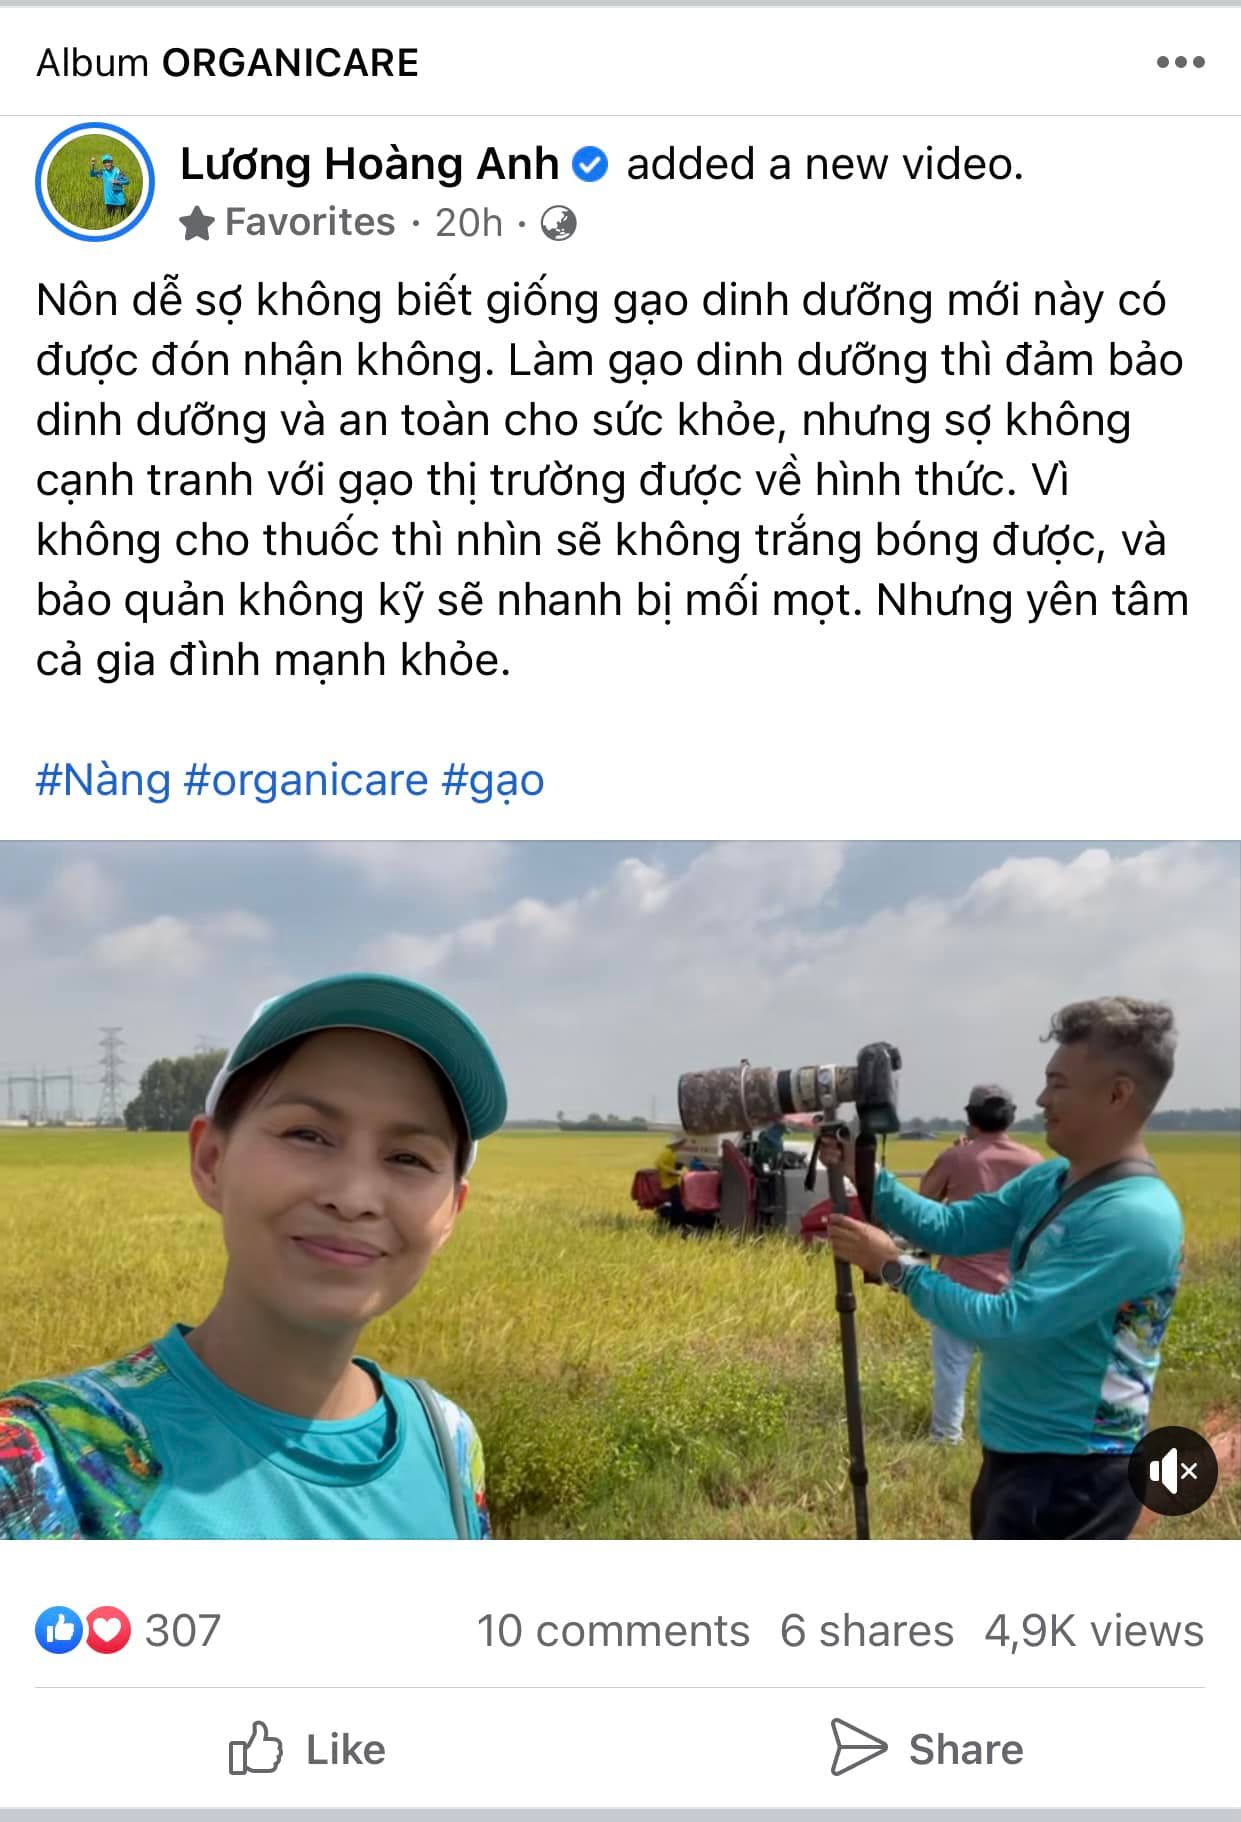 Vợ cũ Huy Khánh khó cạnh tranh với gạo thị trường vì không cho thuốc, doanh nghiệp ngành gạo bức xúc - Ảnh 1.